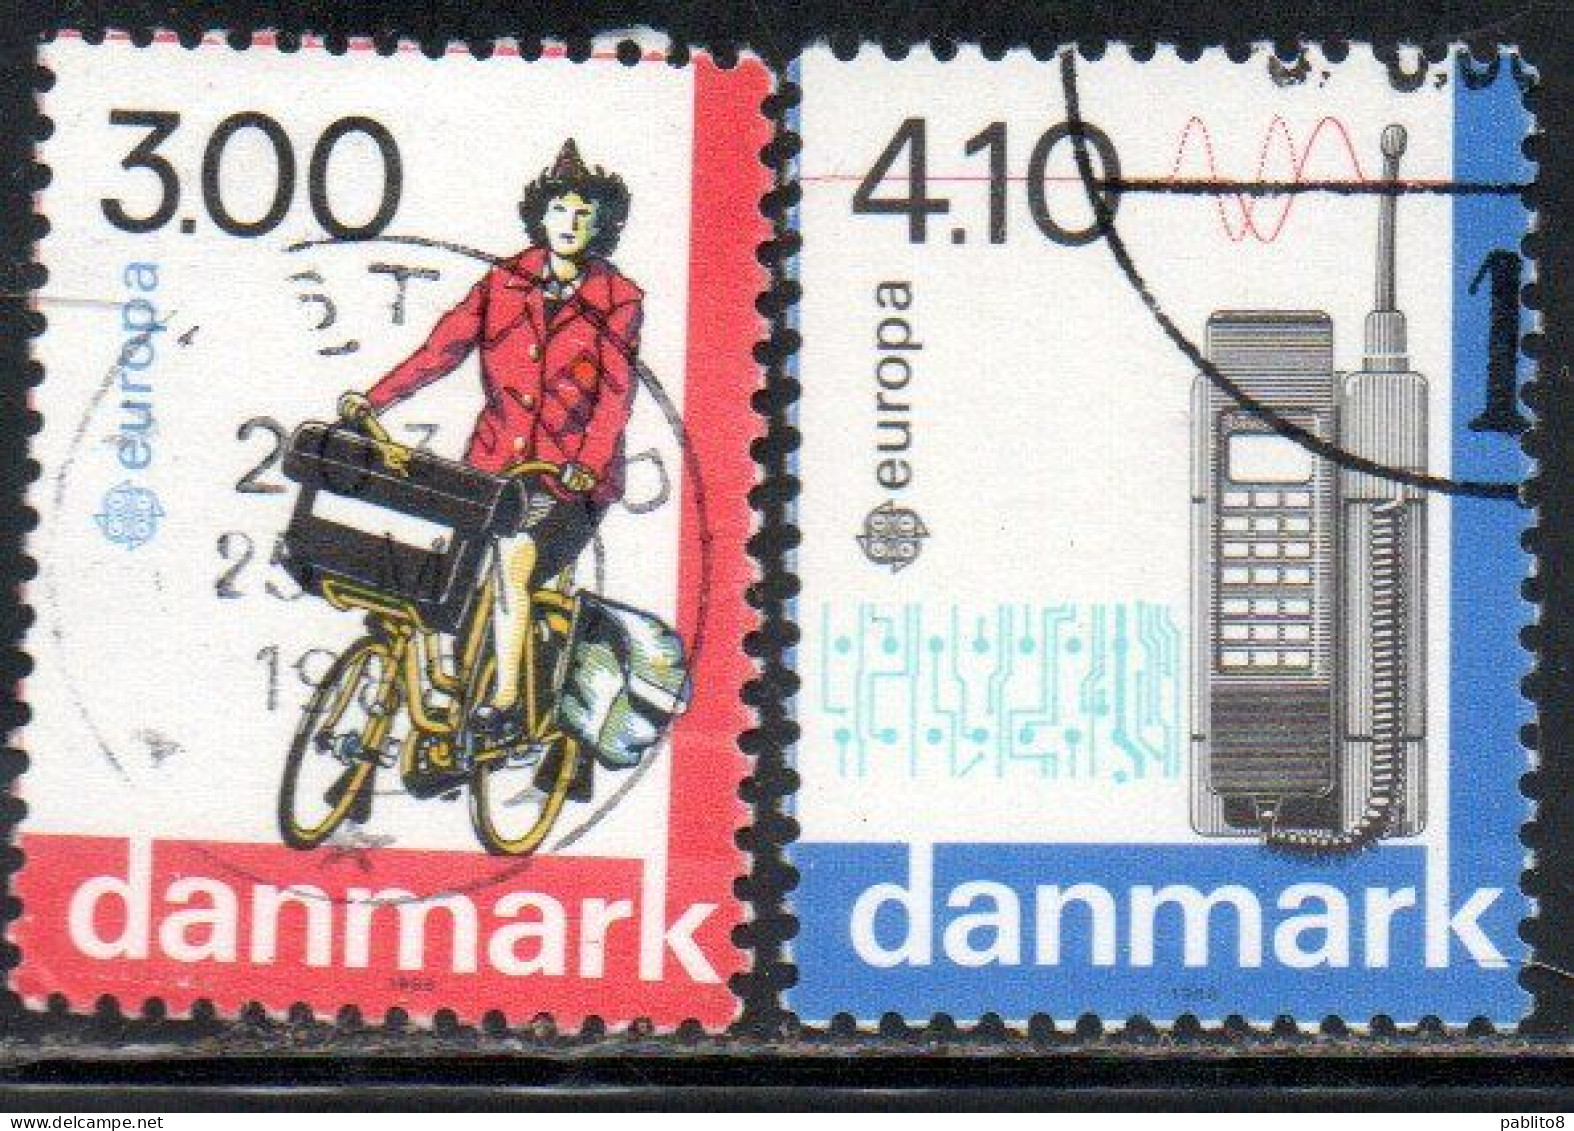 DANEMARK DANMARK DENMARK DANIMARCA 1988 EUROPA CEPT TRANSPORT AND COMMUNICATION COMPLETE SET SERIE USED USATO OBLITERE' - Oblitérés